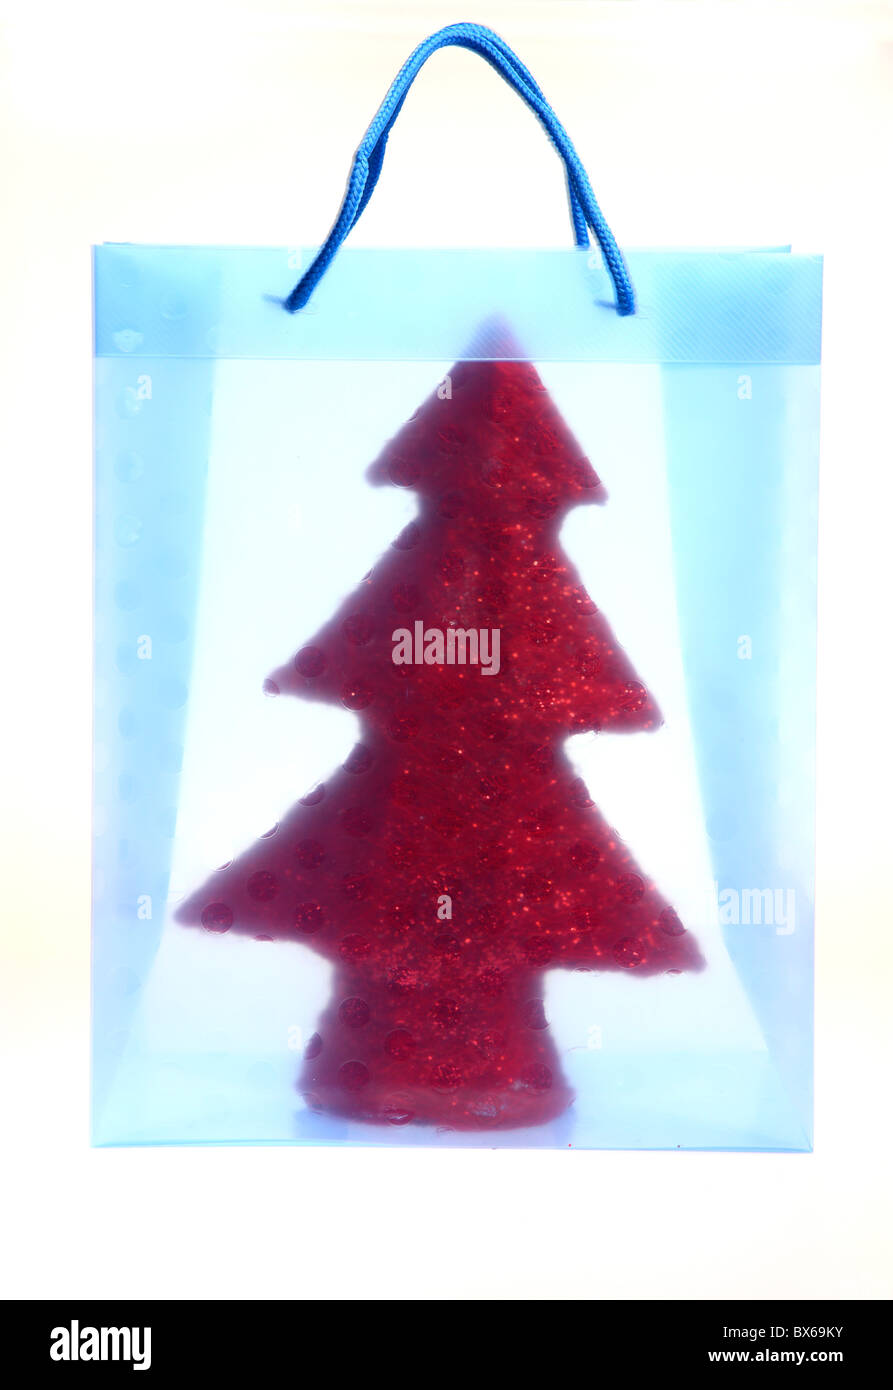 Colorato borsa regalo, riempito con un piccolo albero di Natale artificiale. Foto Stock